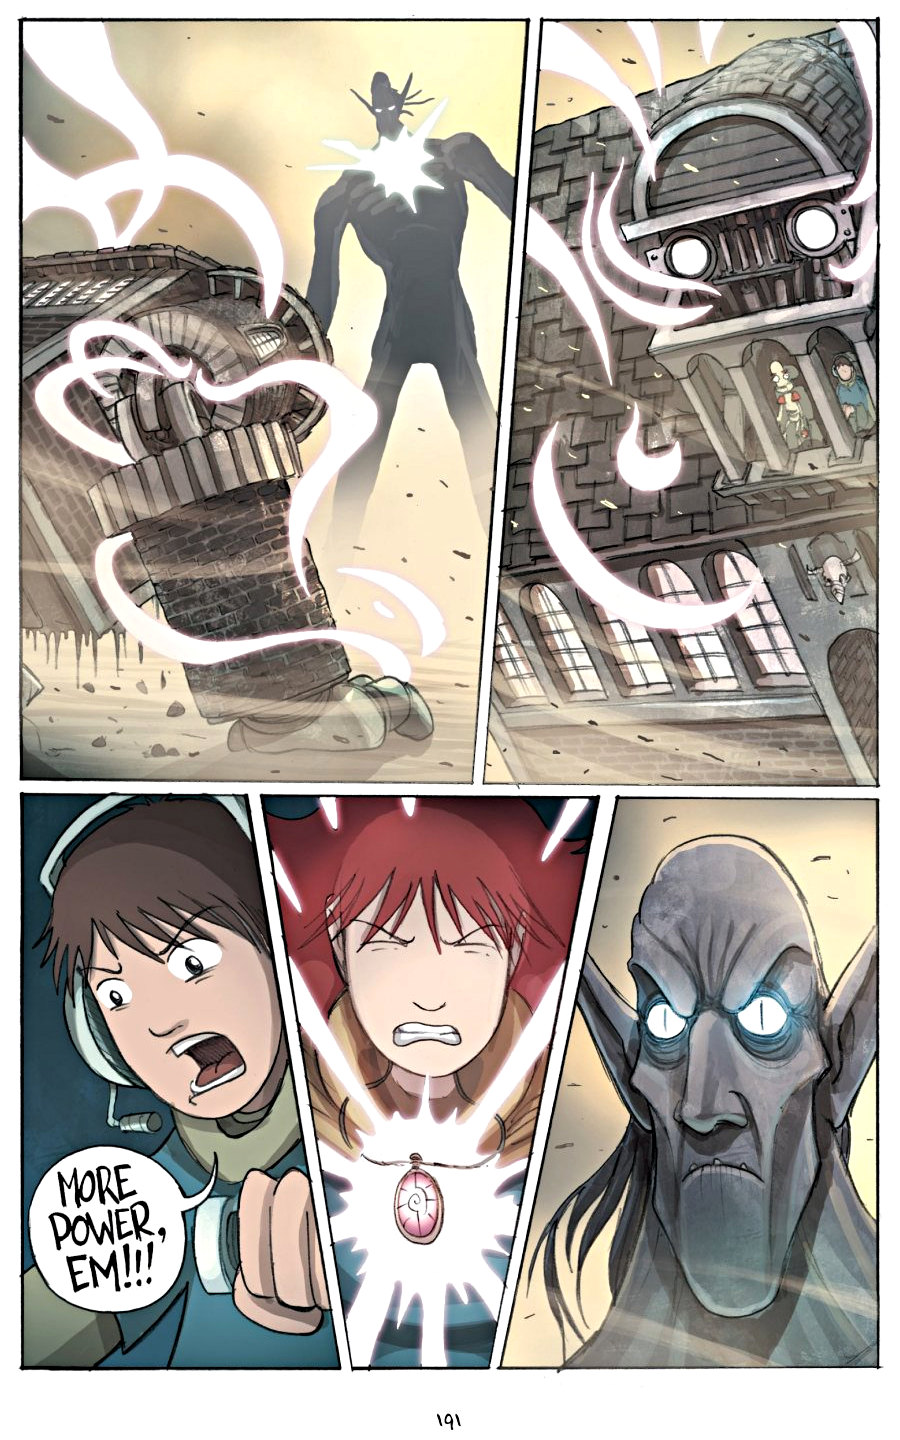 page 191 of amulet 2 stonekeeper's curse graphic novel by kazu kibuishi